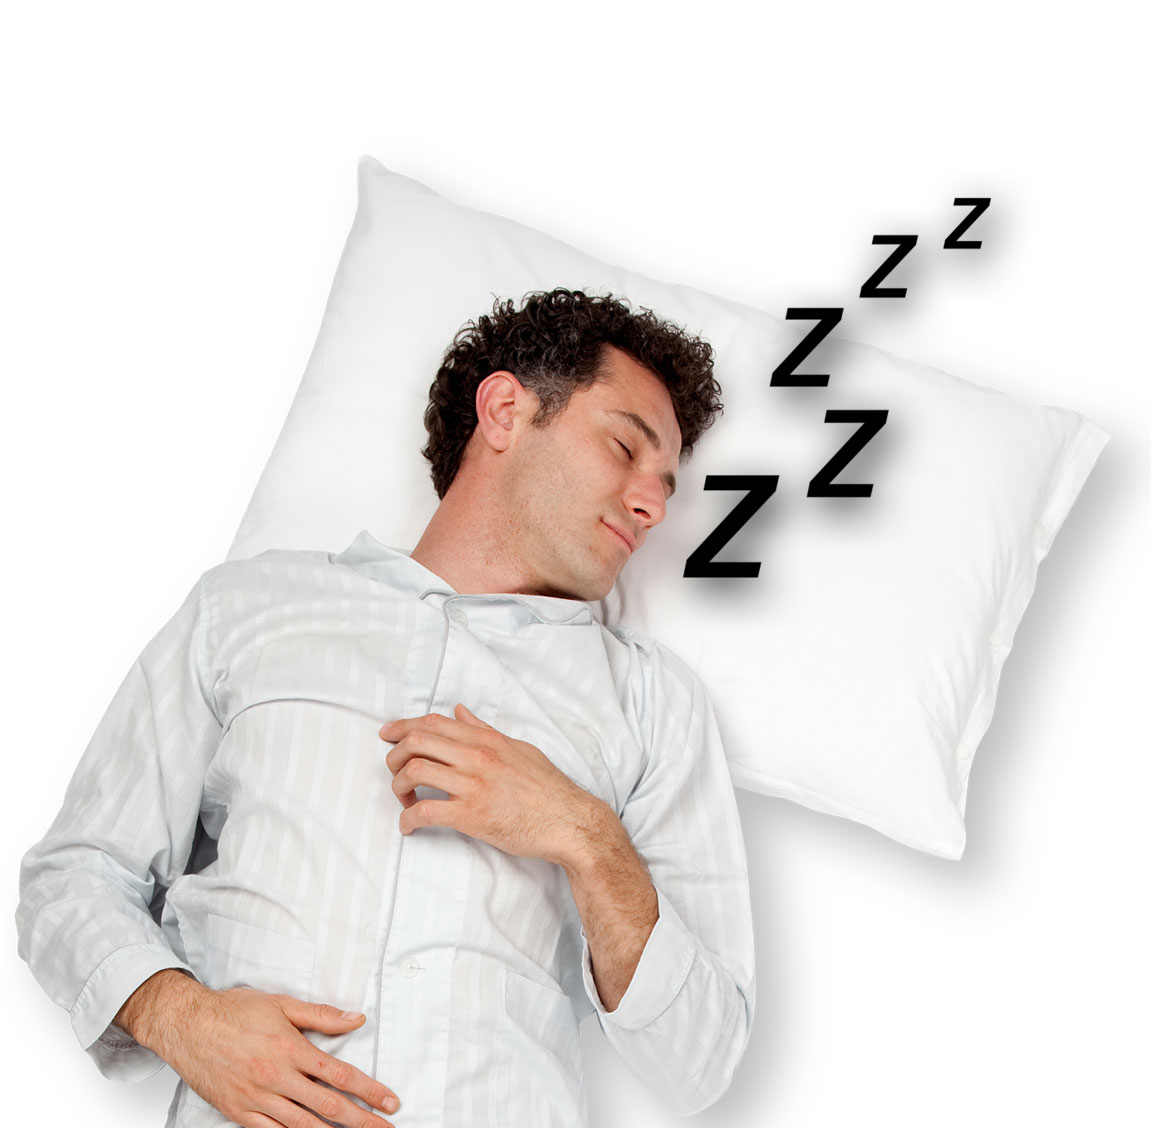 Super trikovi za spavanje za koje vjerojatno nikad niste čuli